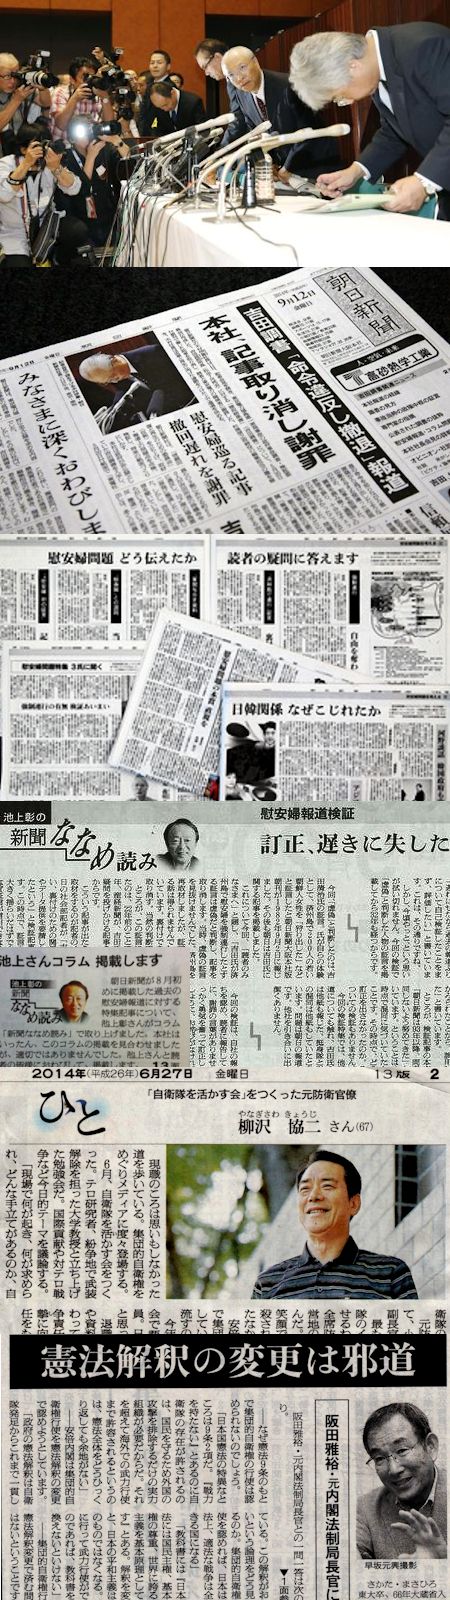 池澤夏樹の転向 - 「新聞記者、ジャーナリズムの転向から始まる」_c0315619_15485517.jpg